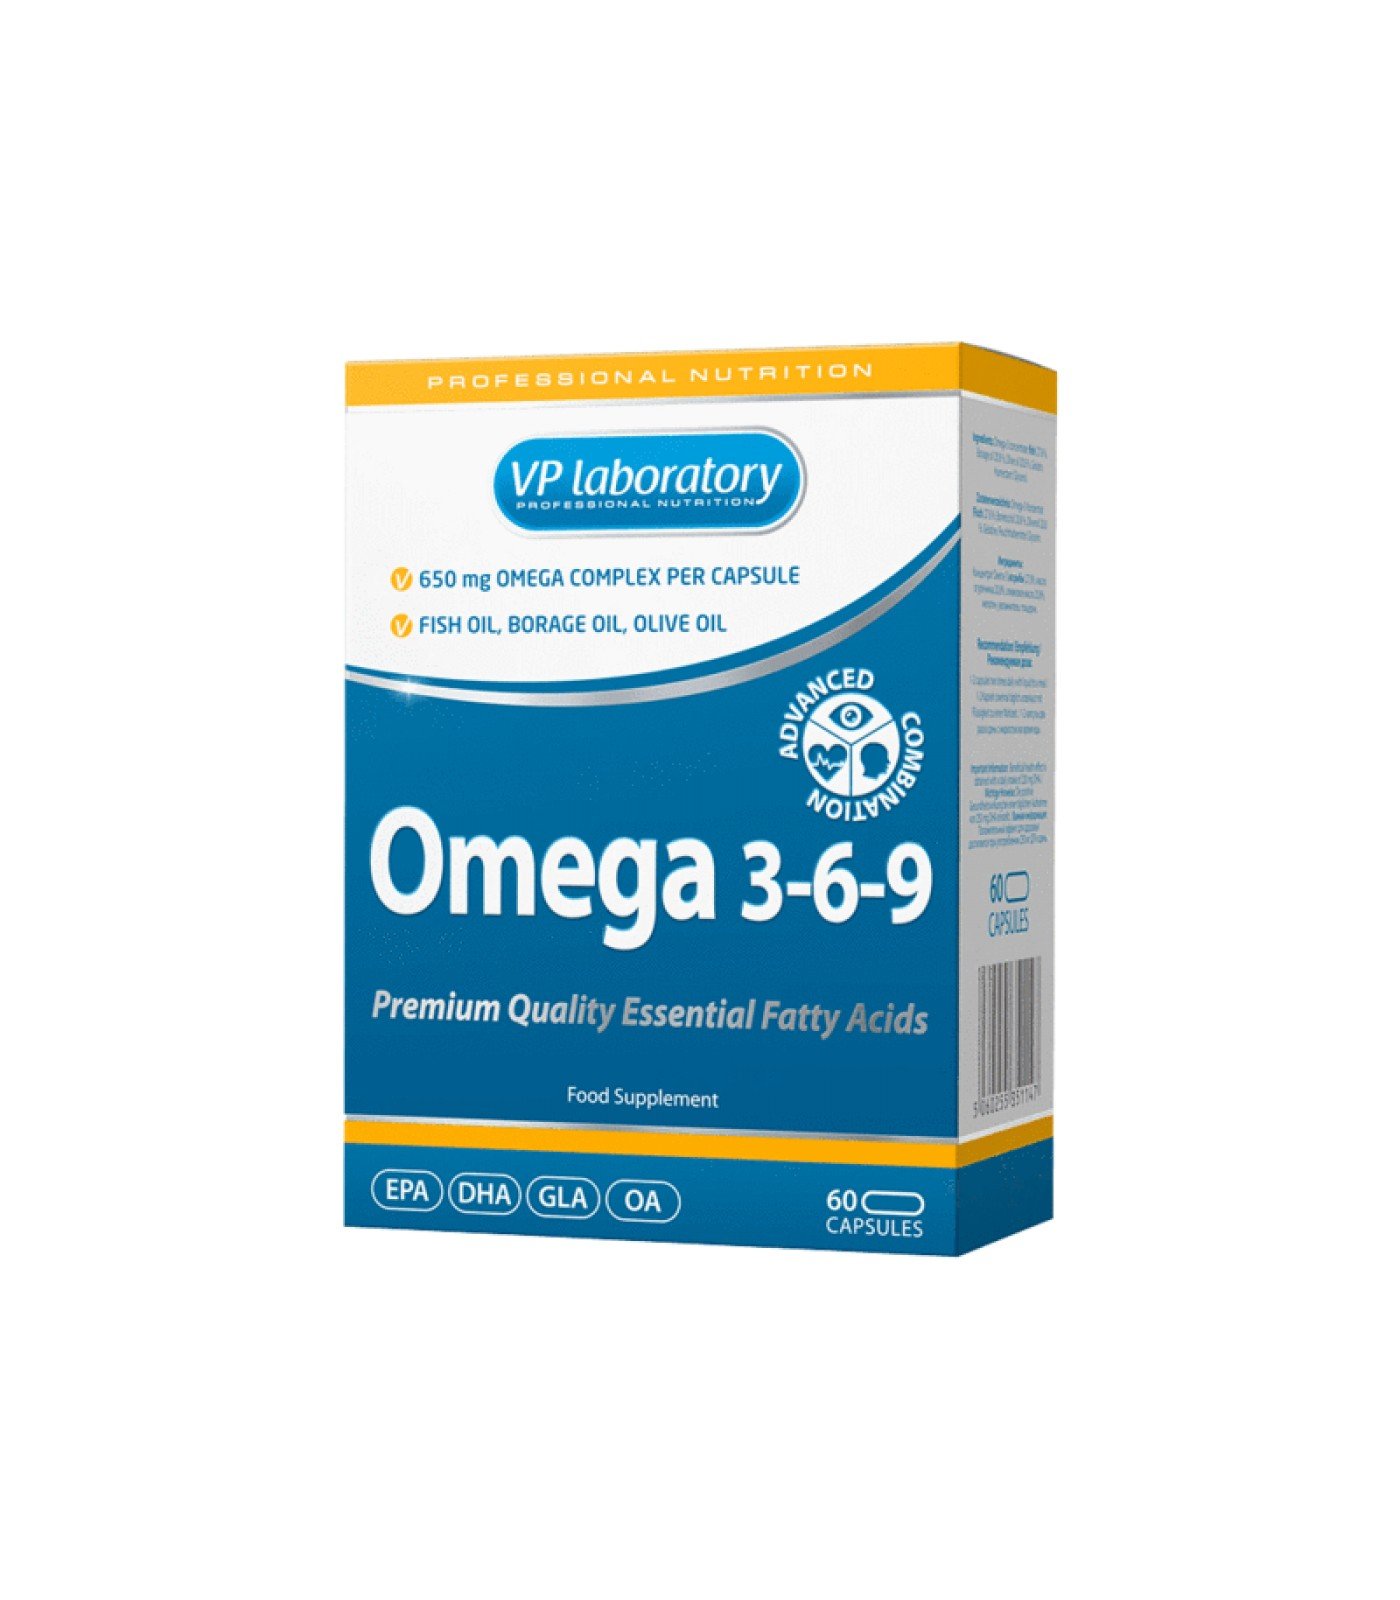 VP Laboratory Omega 3-6-9 - Омега 3-6-9